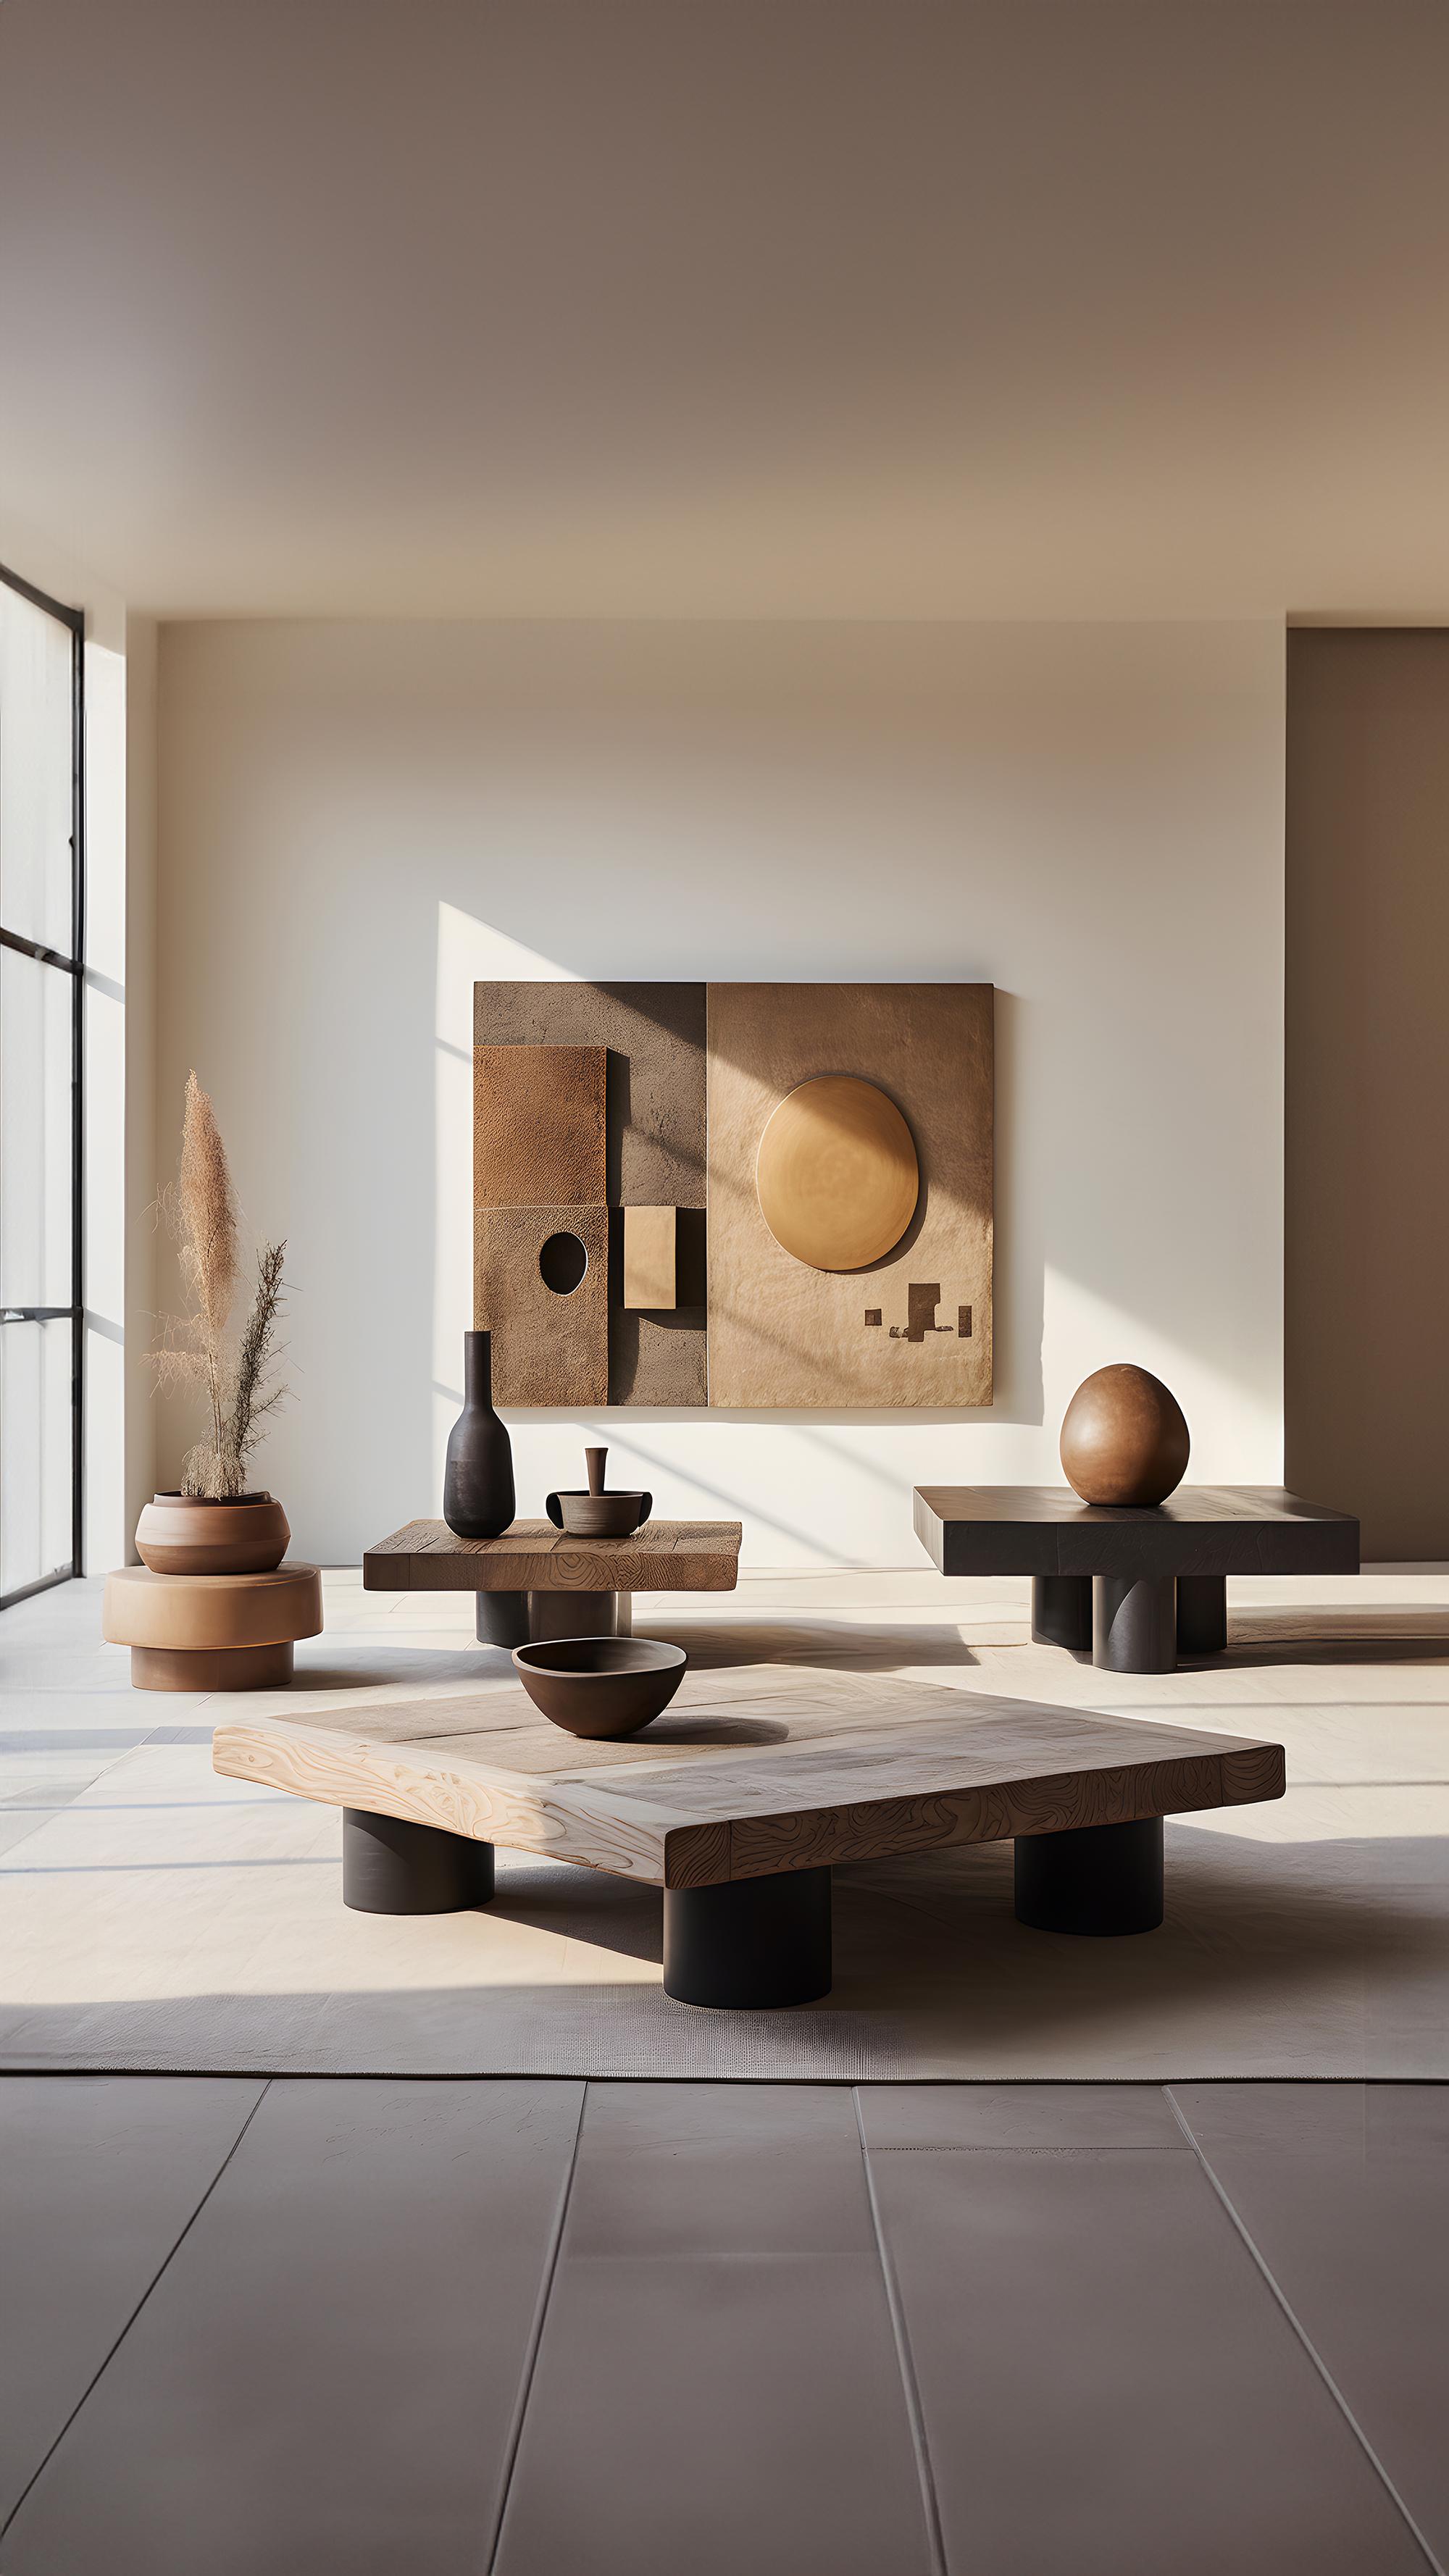 Contemporary Bold Square Coffee Table in Black Tint - Architectural Fundamenta 29 by NONO For Sale